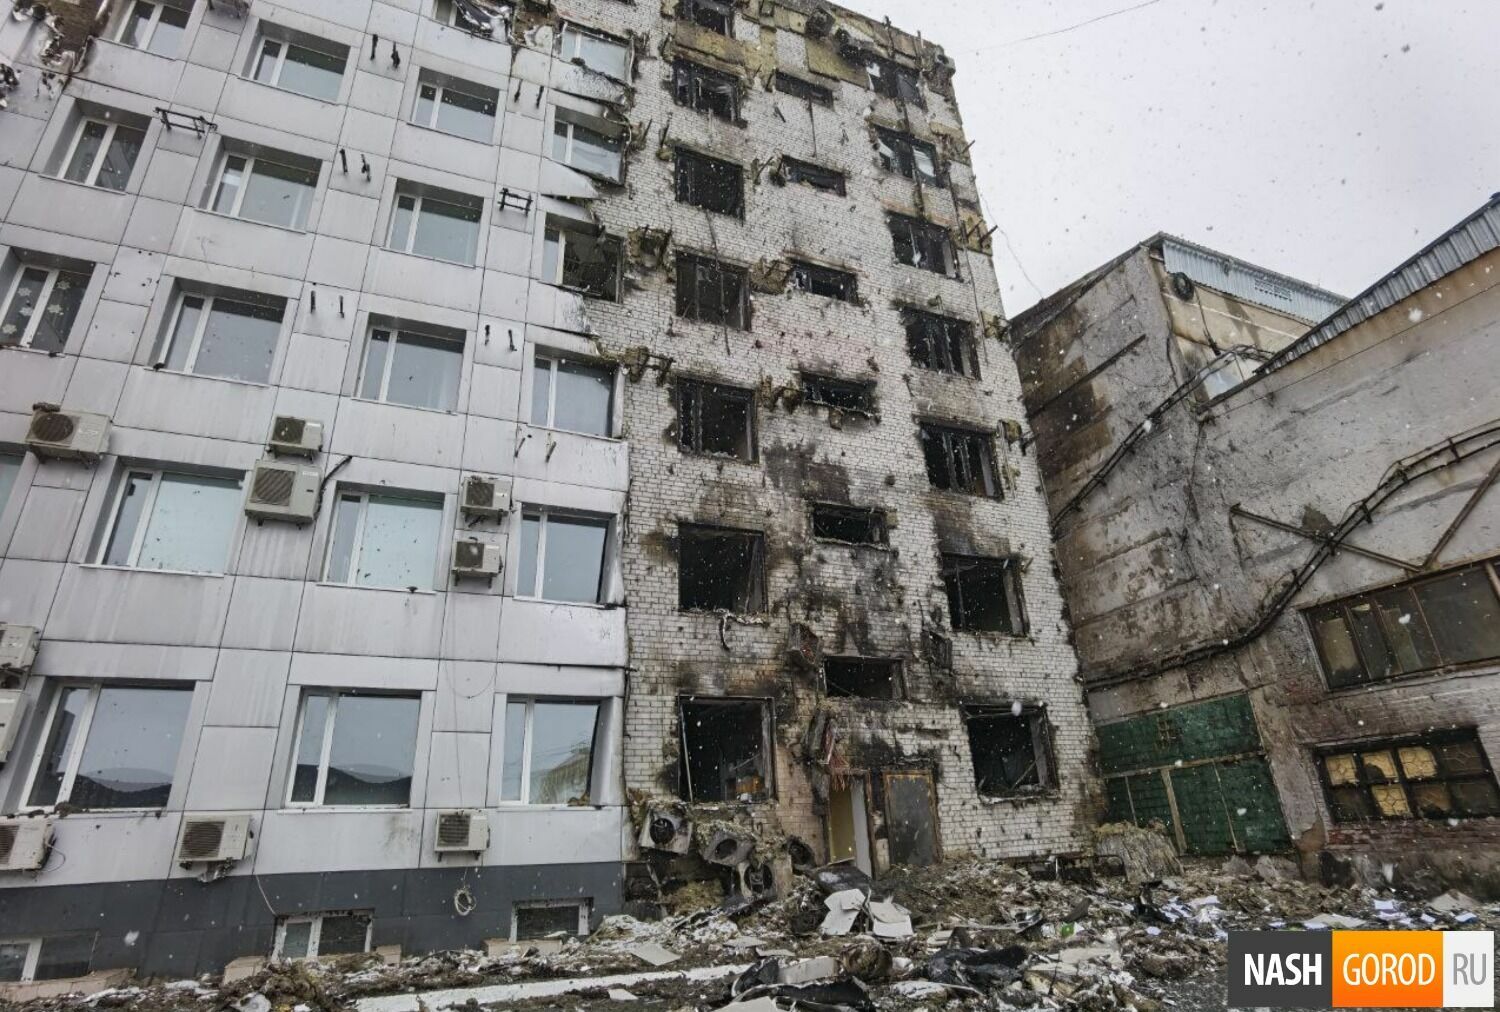 Здание теперь похоже на дом в Чернобыле после катастрофы.